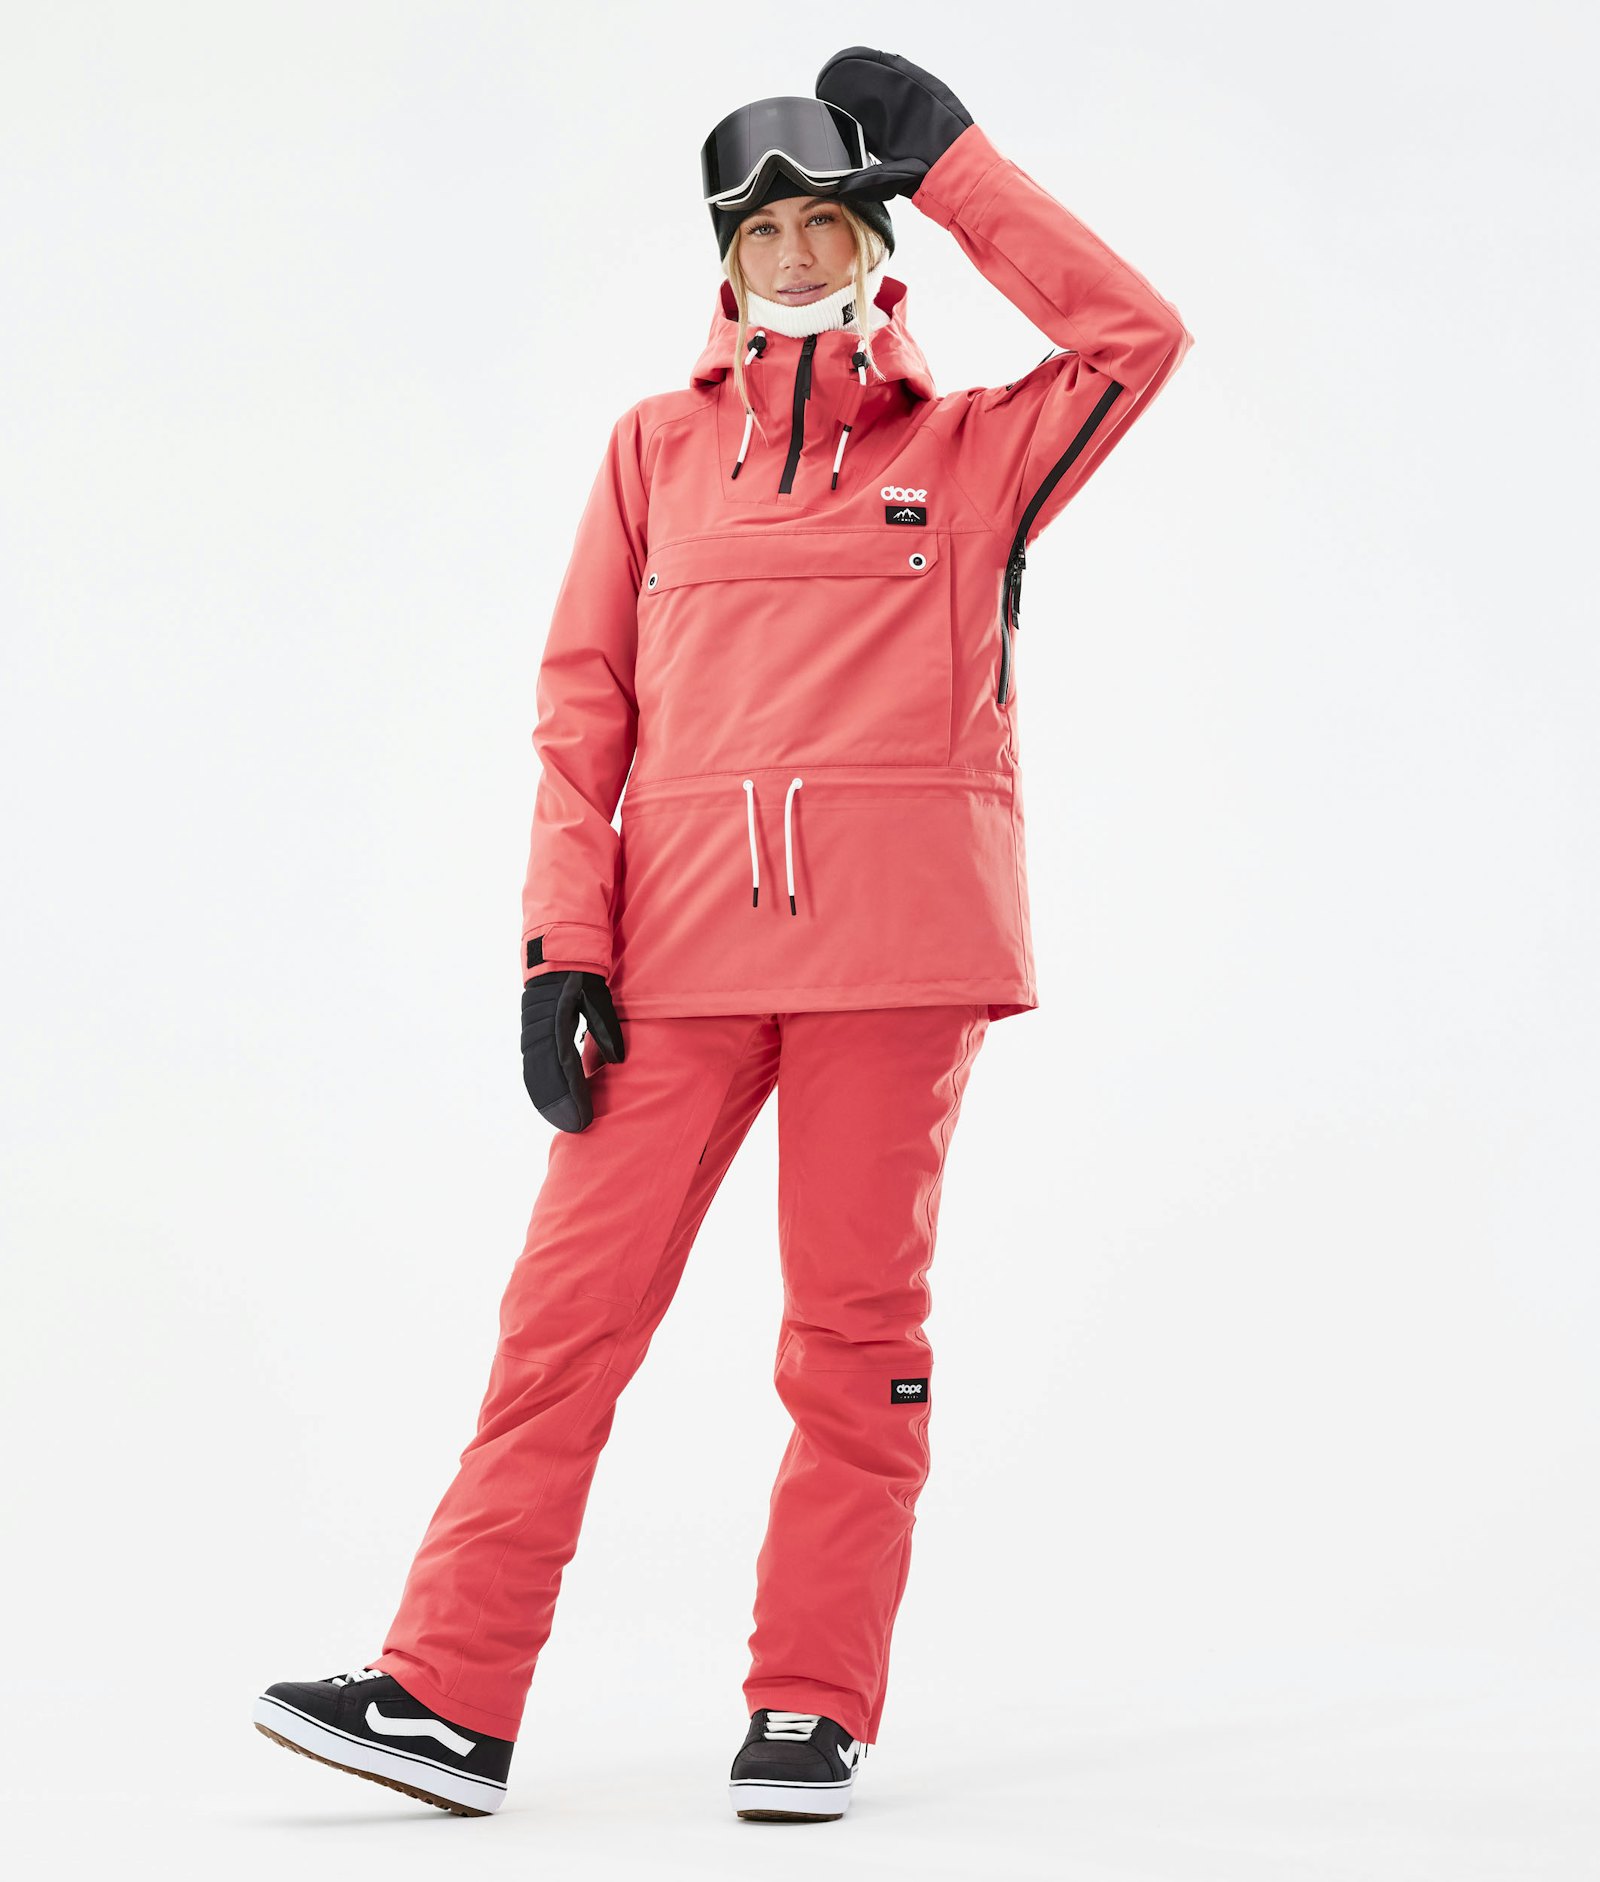 Annok W 2021 Veste Snowboard Femme Coral